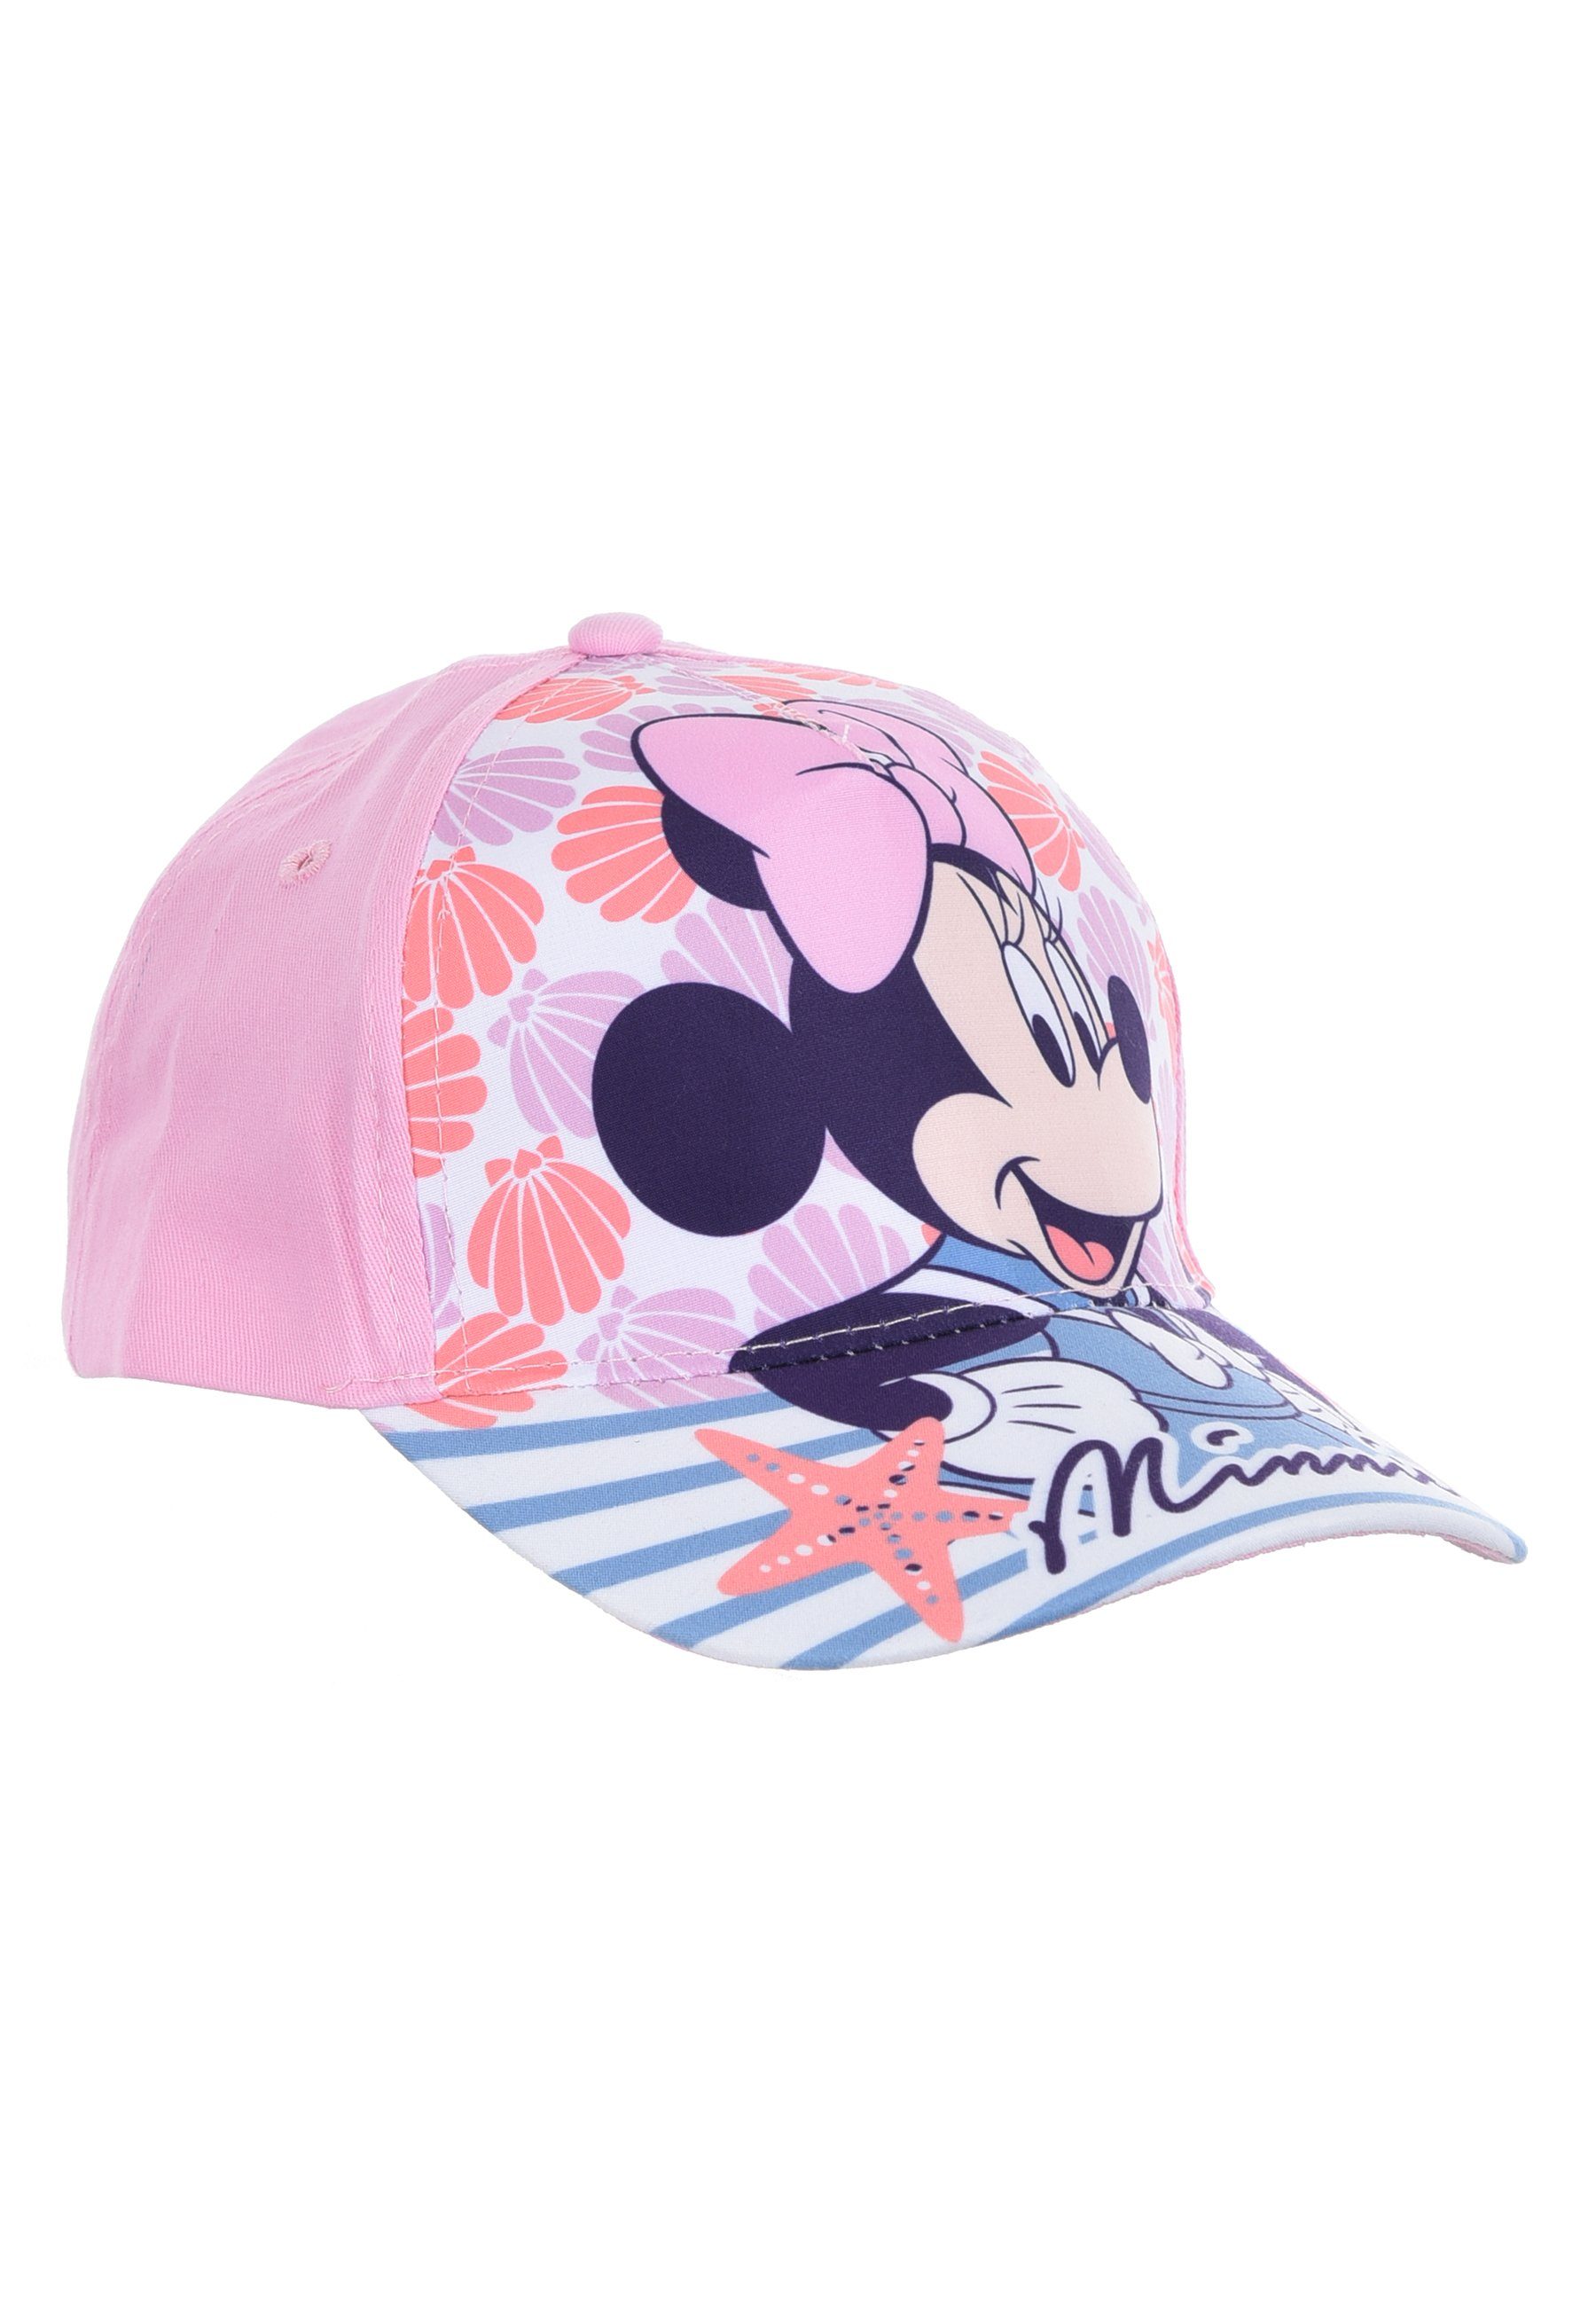 Disney Minnie Mouse Baseball Cap Rosa Mütze Kappe